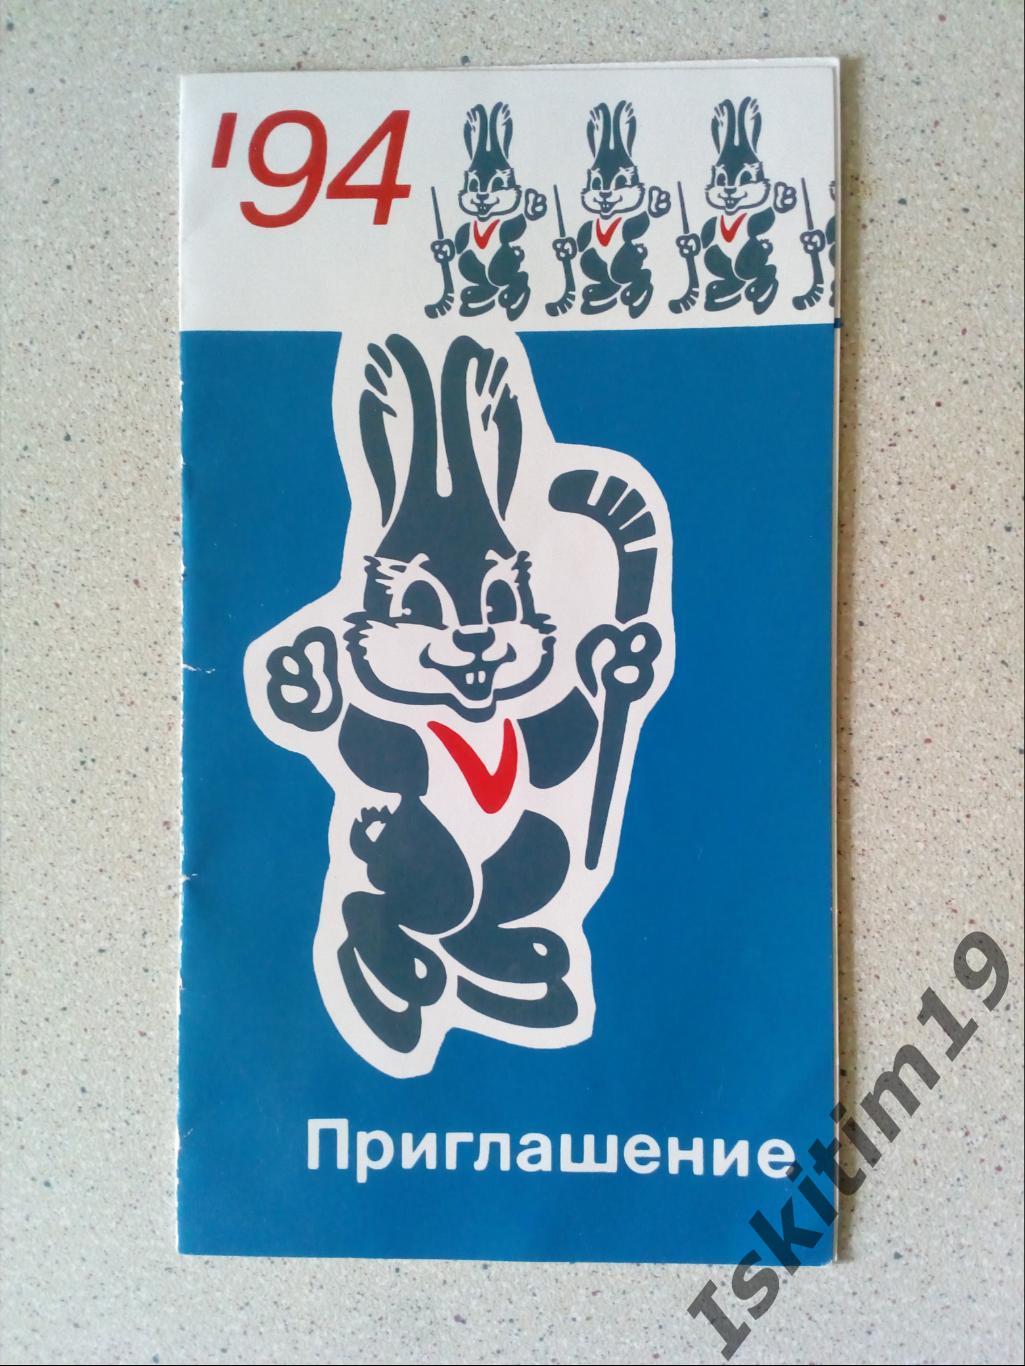 Приглашение на матчи Чемпионата мира среди юниоров. Новосибирск 1994